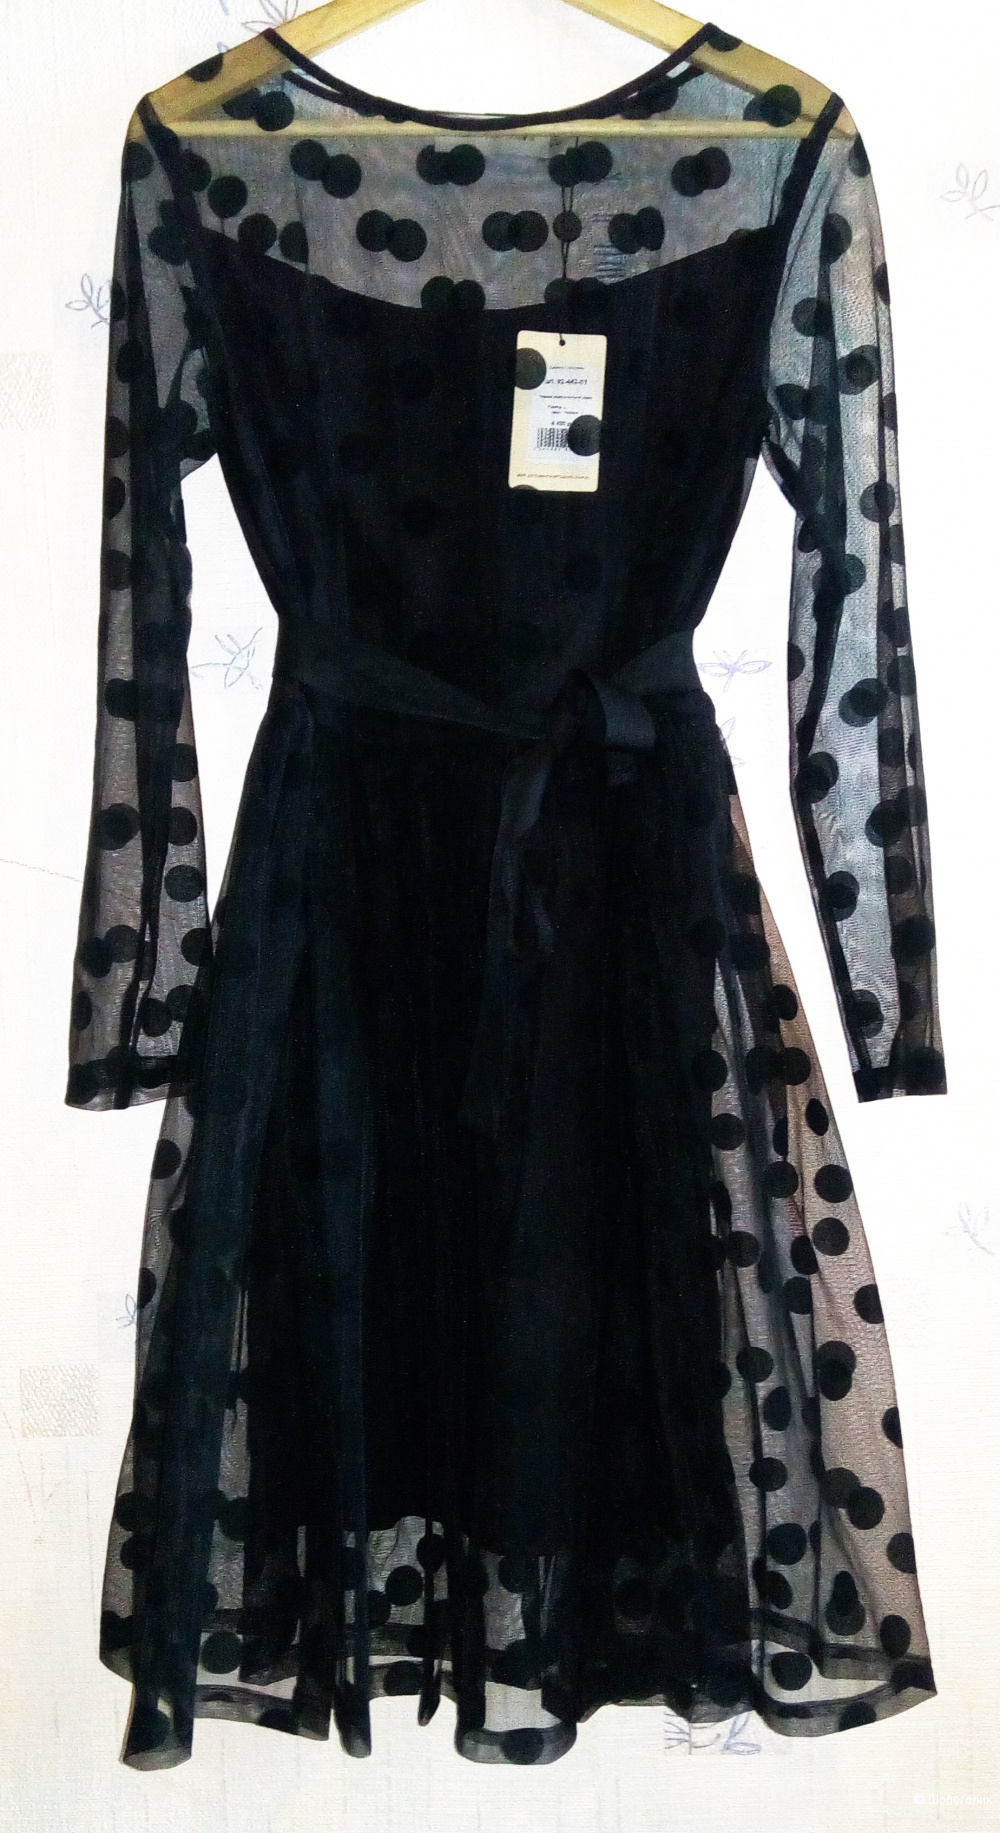 Платье Sultanna Frantsuzova. Размер 46